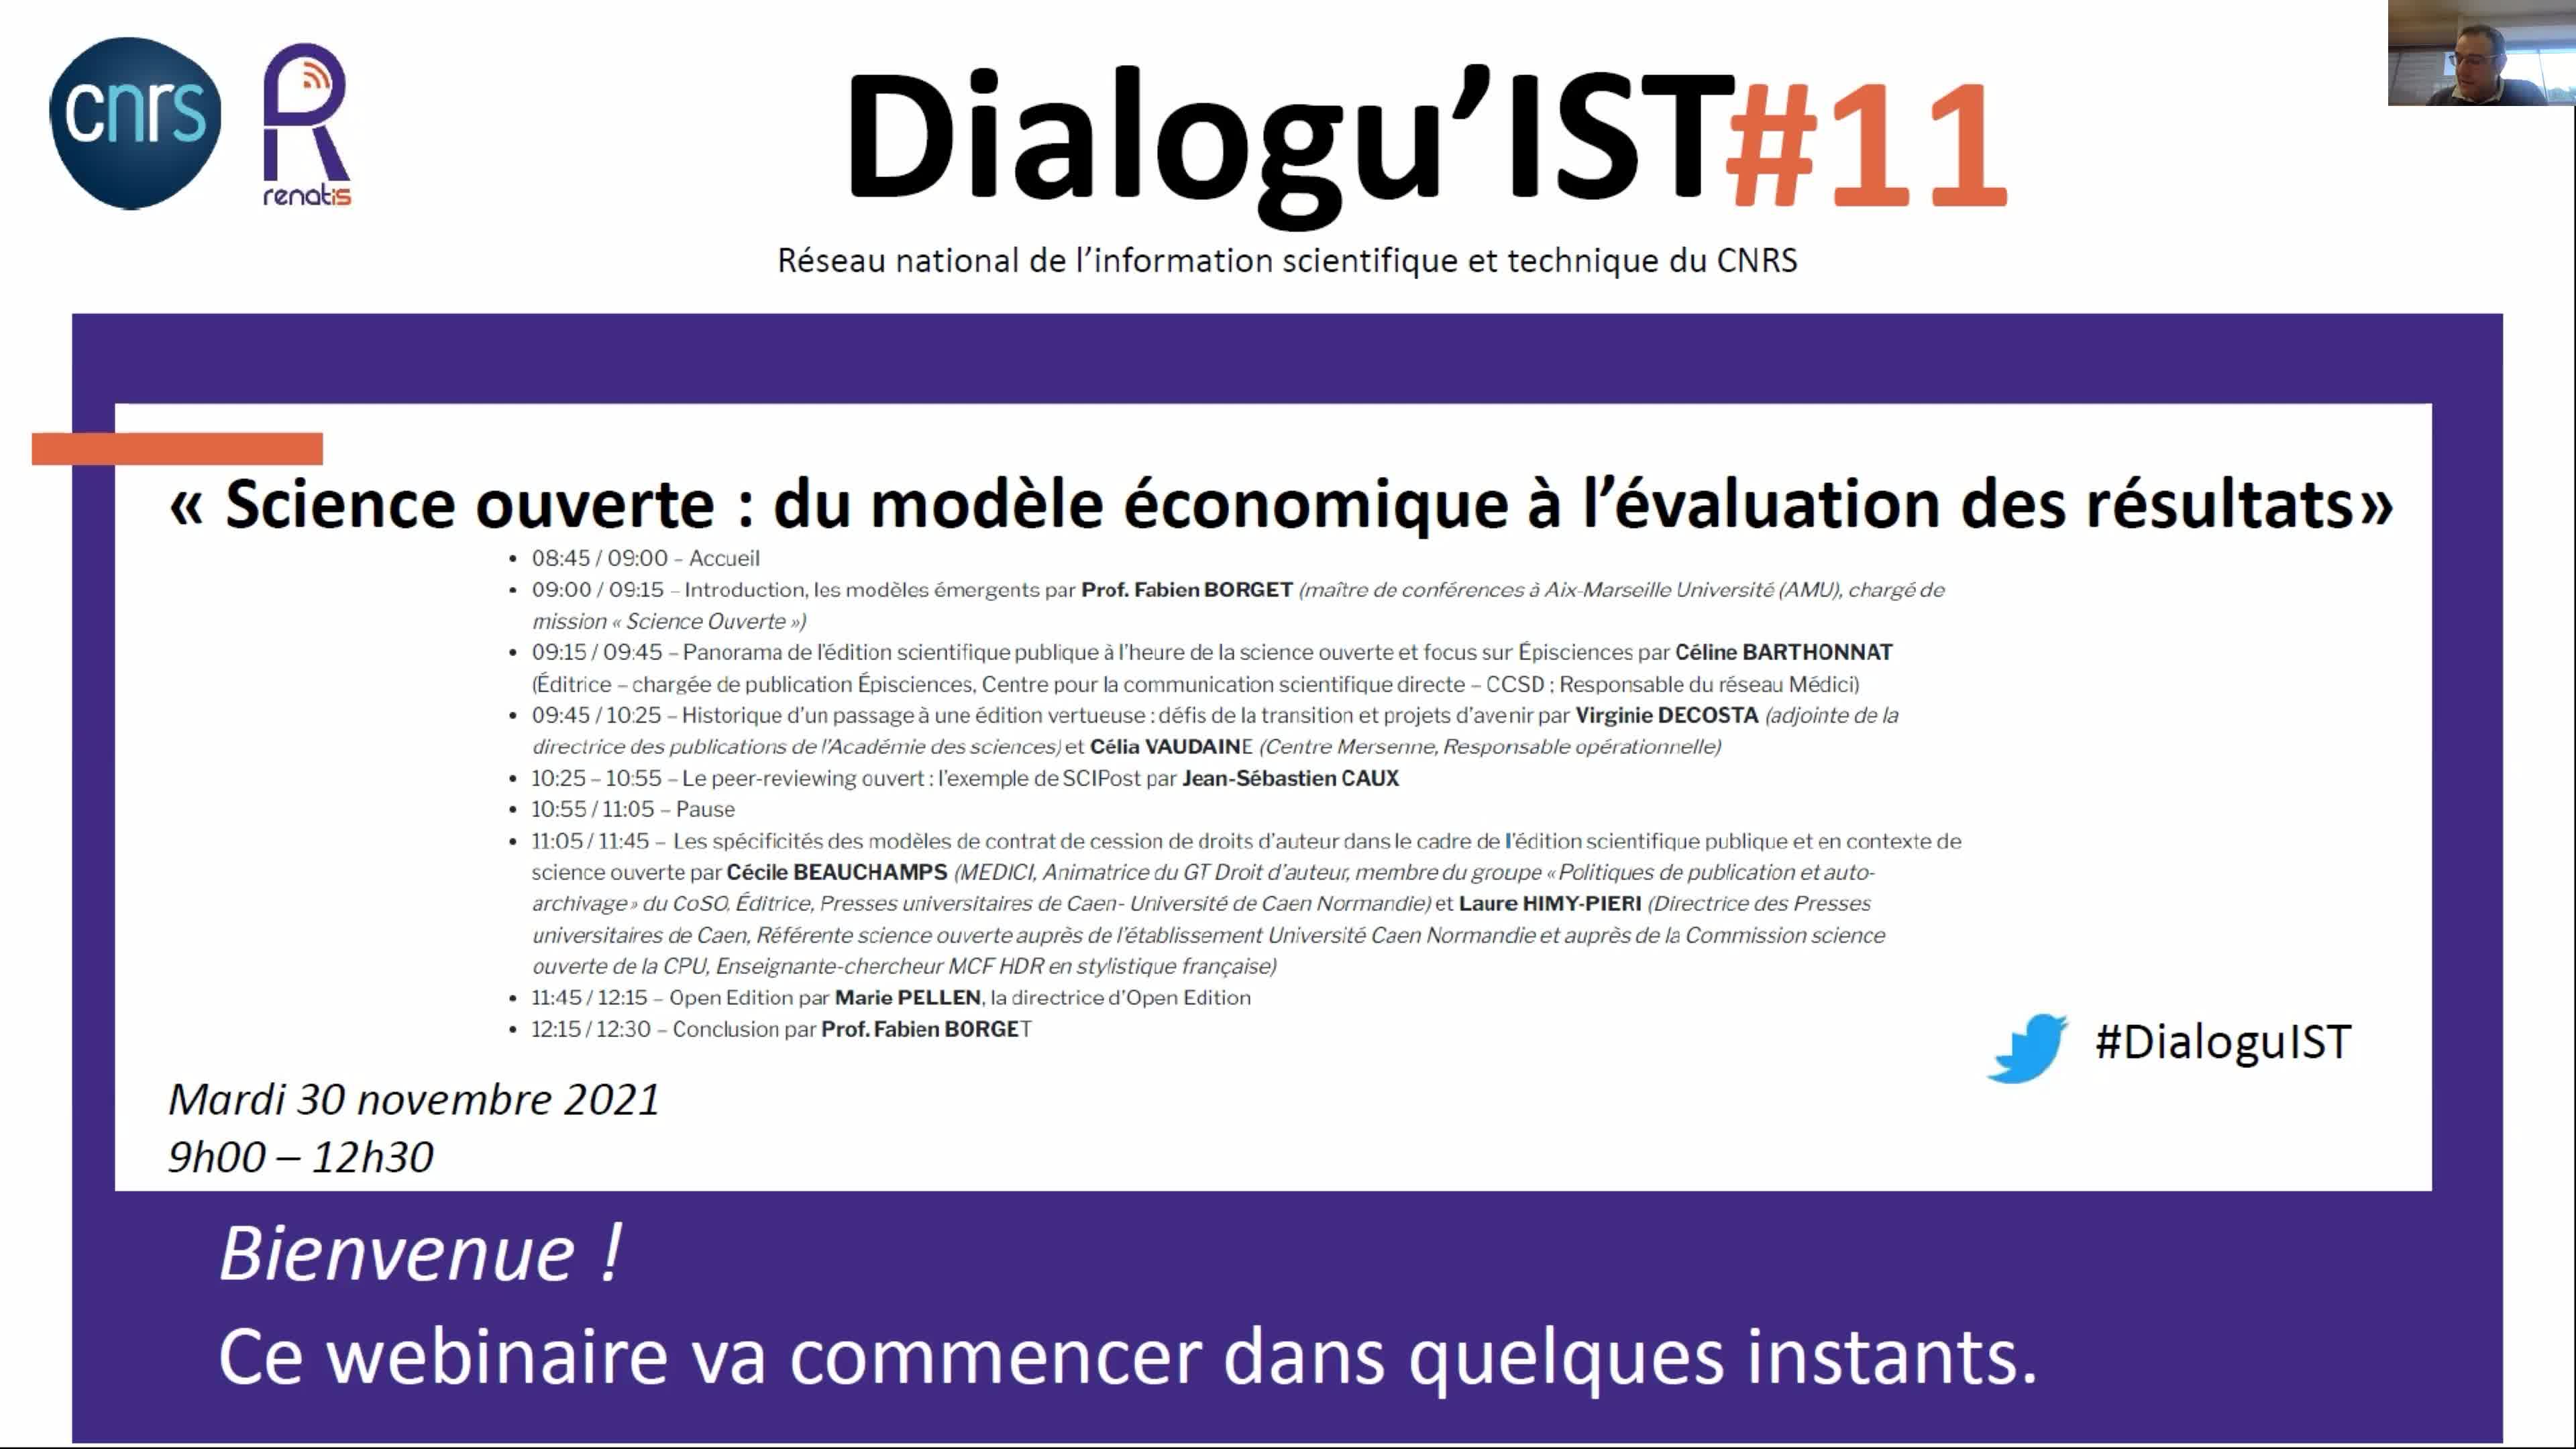 Atelier Dialogu'IST 11 - Introduction, les modèles émergents